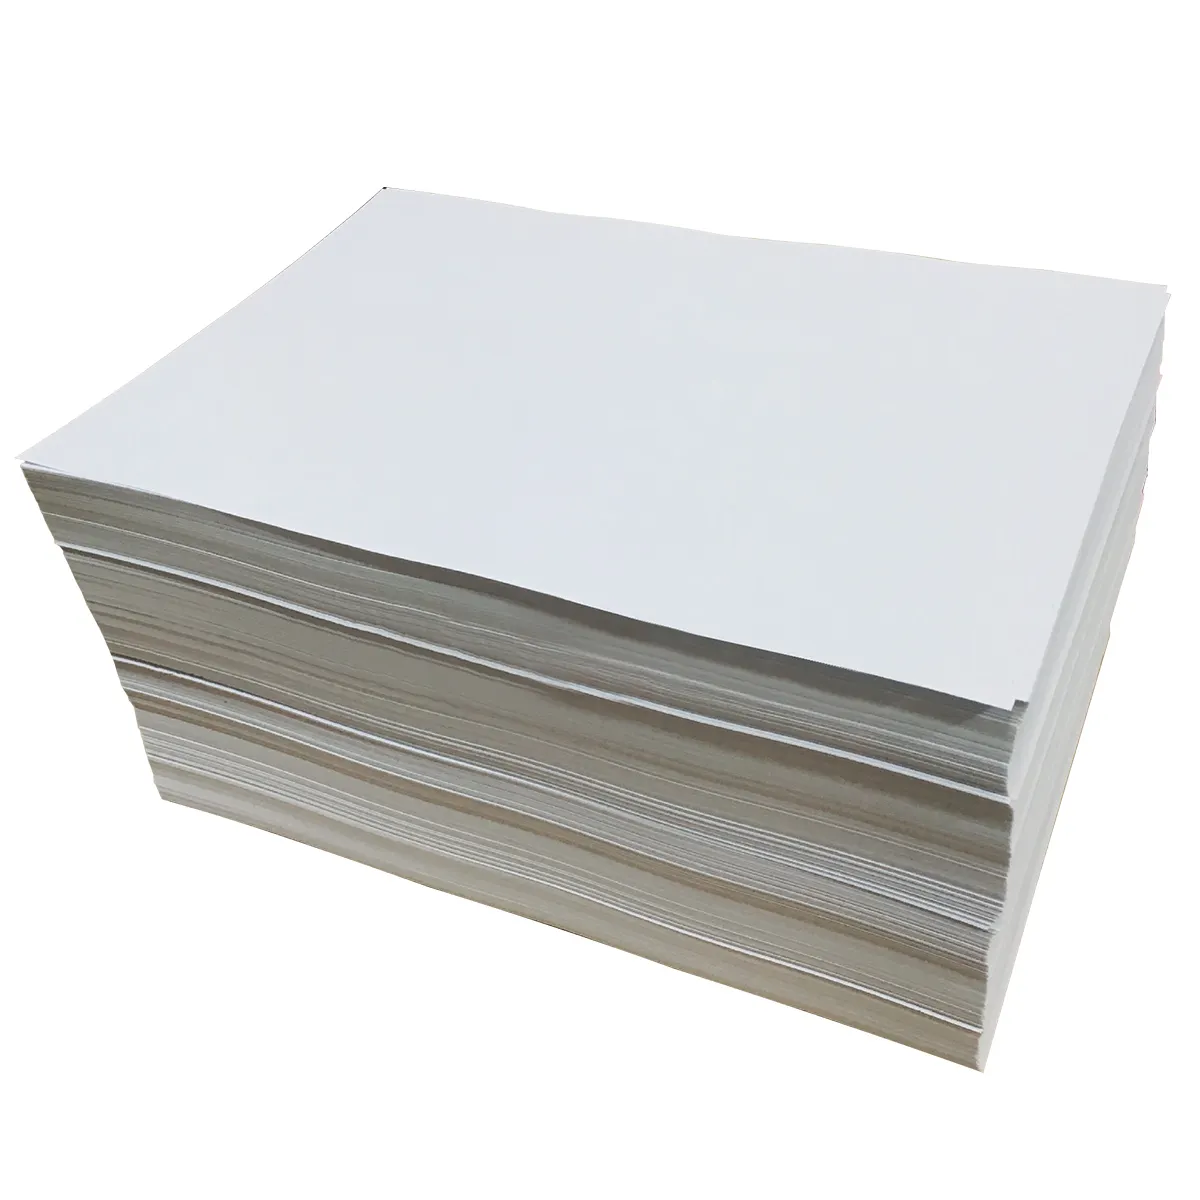 ورق مطبوع 80 جرام لكل متر مربع ورق مطبوع أبيض مطلي بالسيليكون